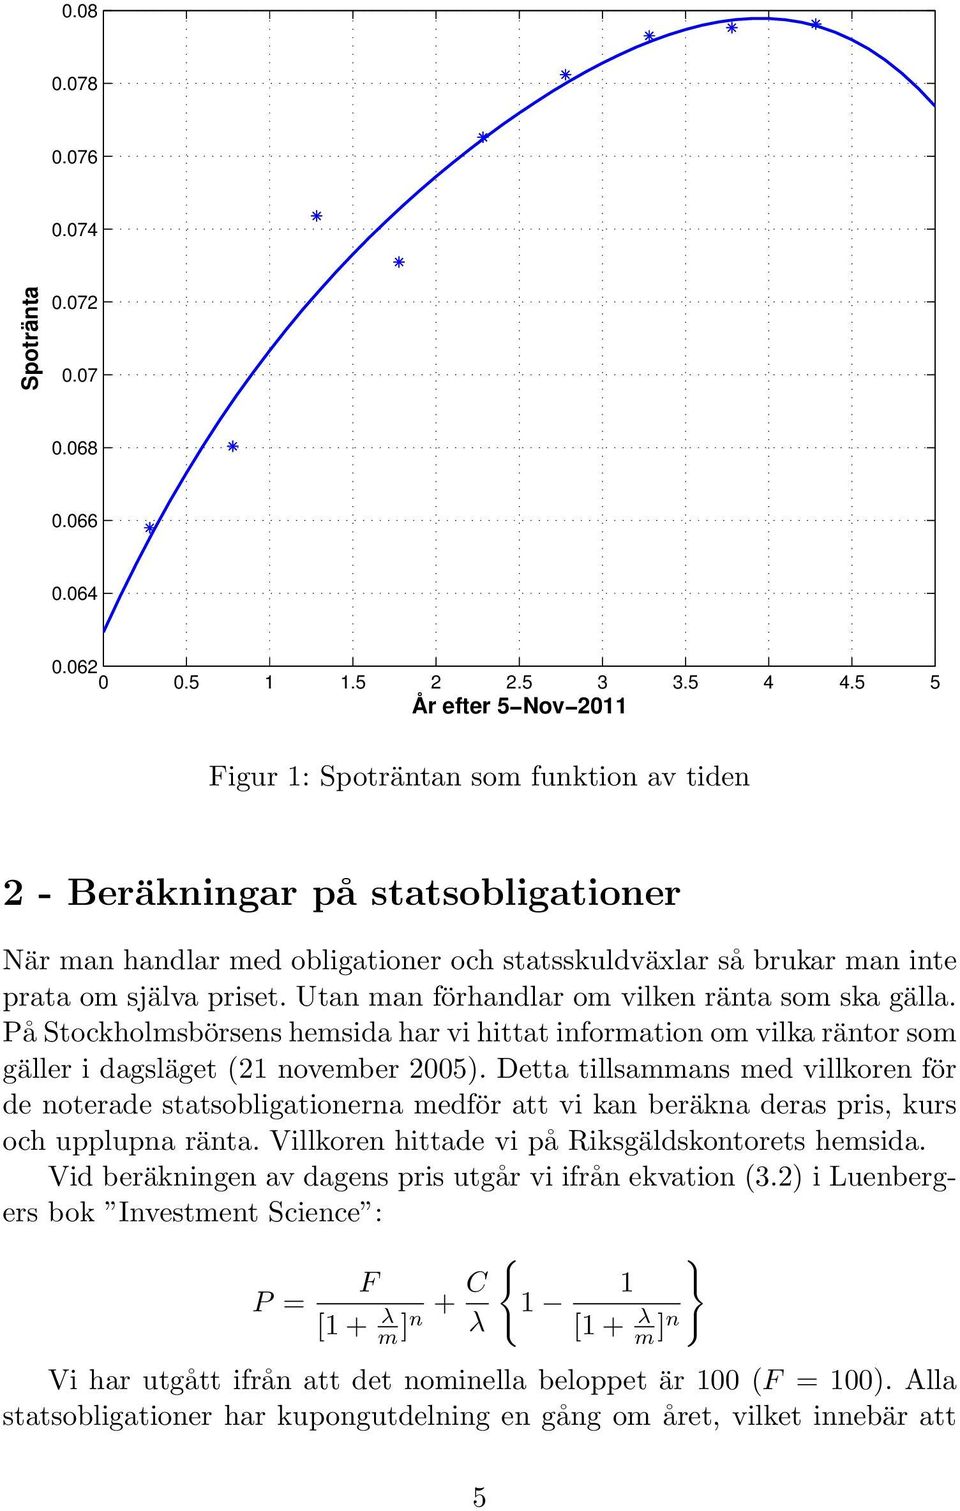 Utan man förhandlar om vilken ränta som ska gälla. På Stockholmsbörsens hemsida har vi hittat information om vilka räntor som gäller i dagsläget (21 november 2005).